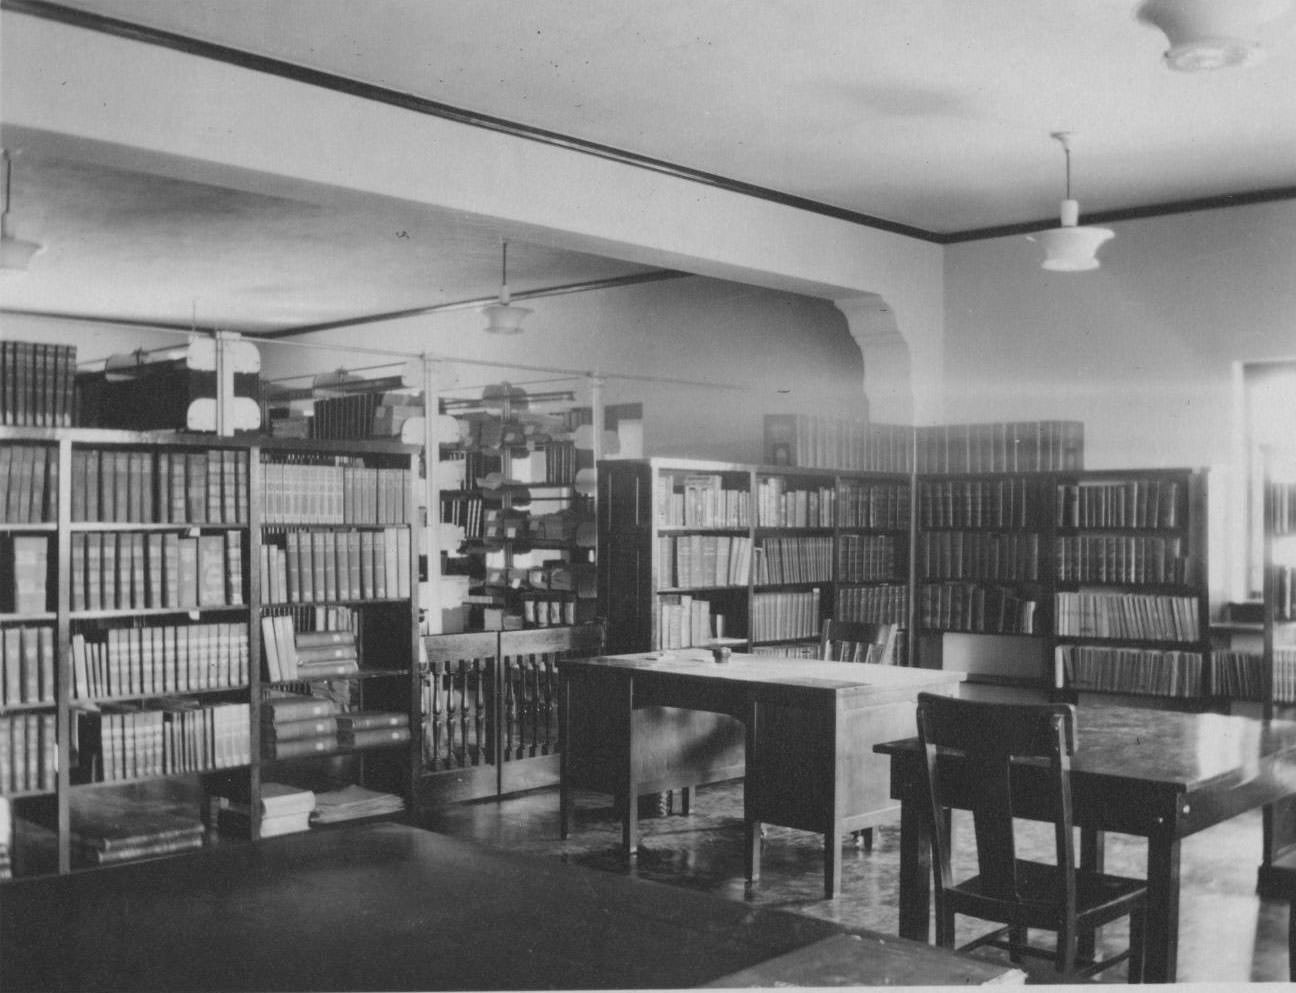 El Paso Public Library: North Side - Second Floor, 1904